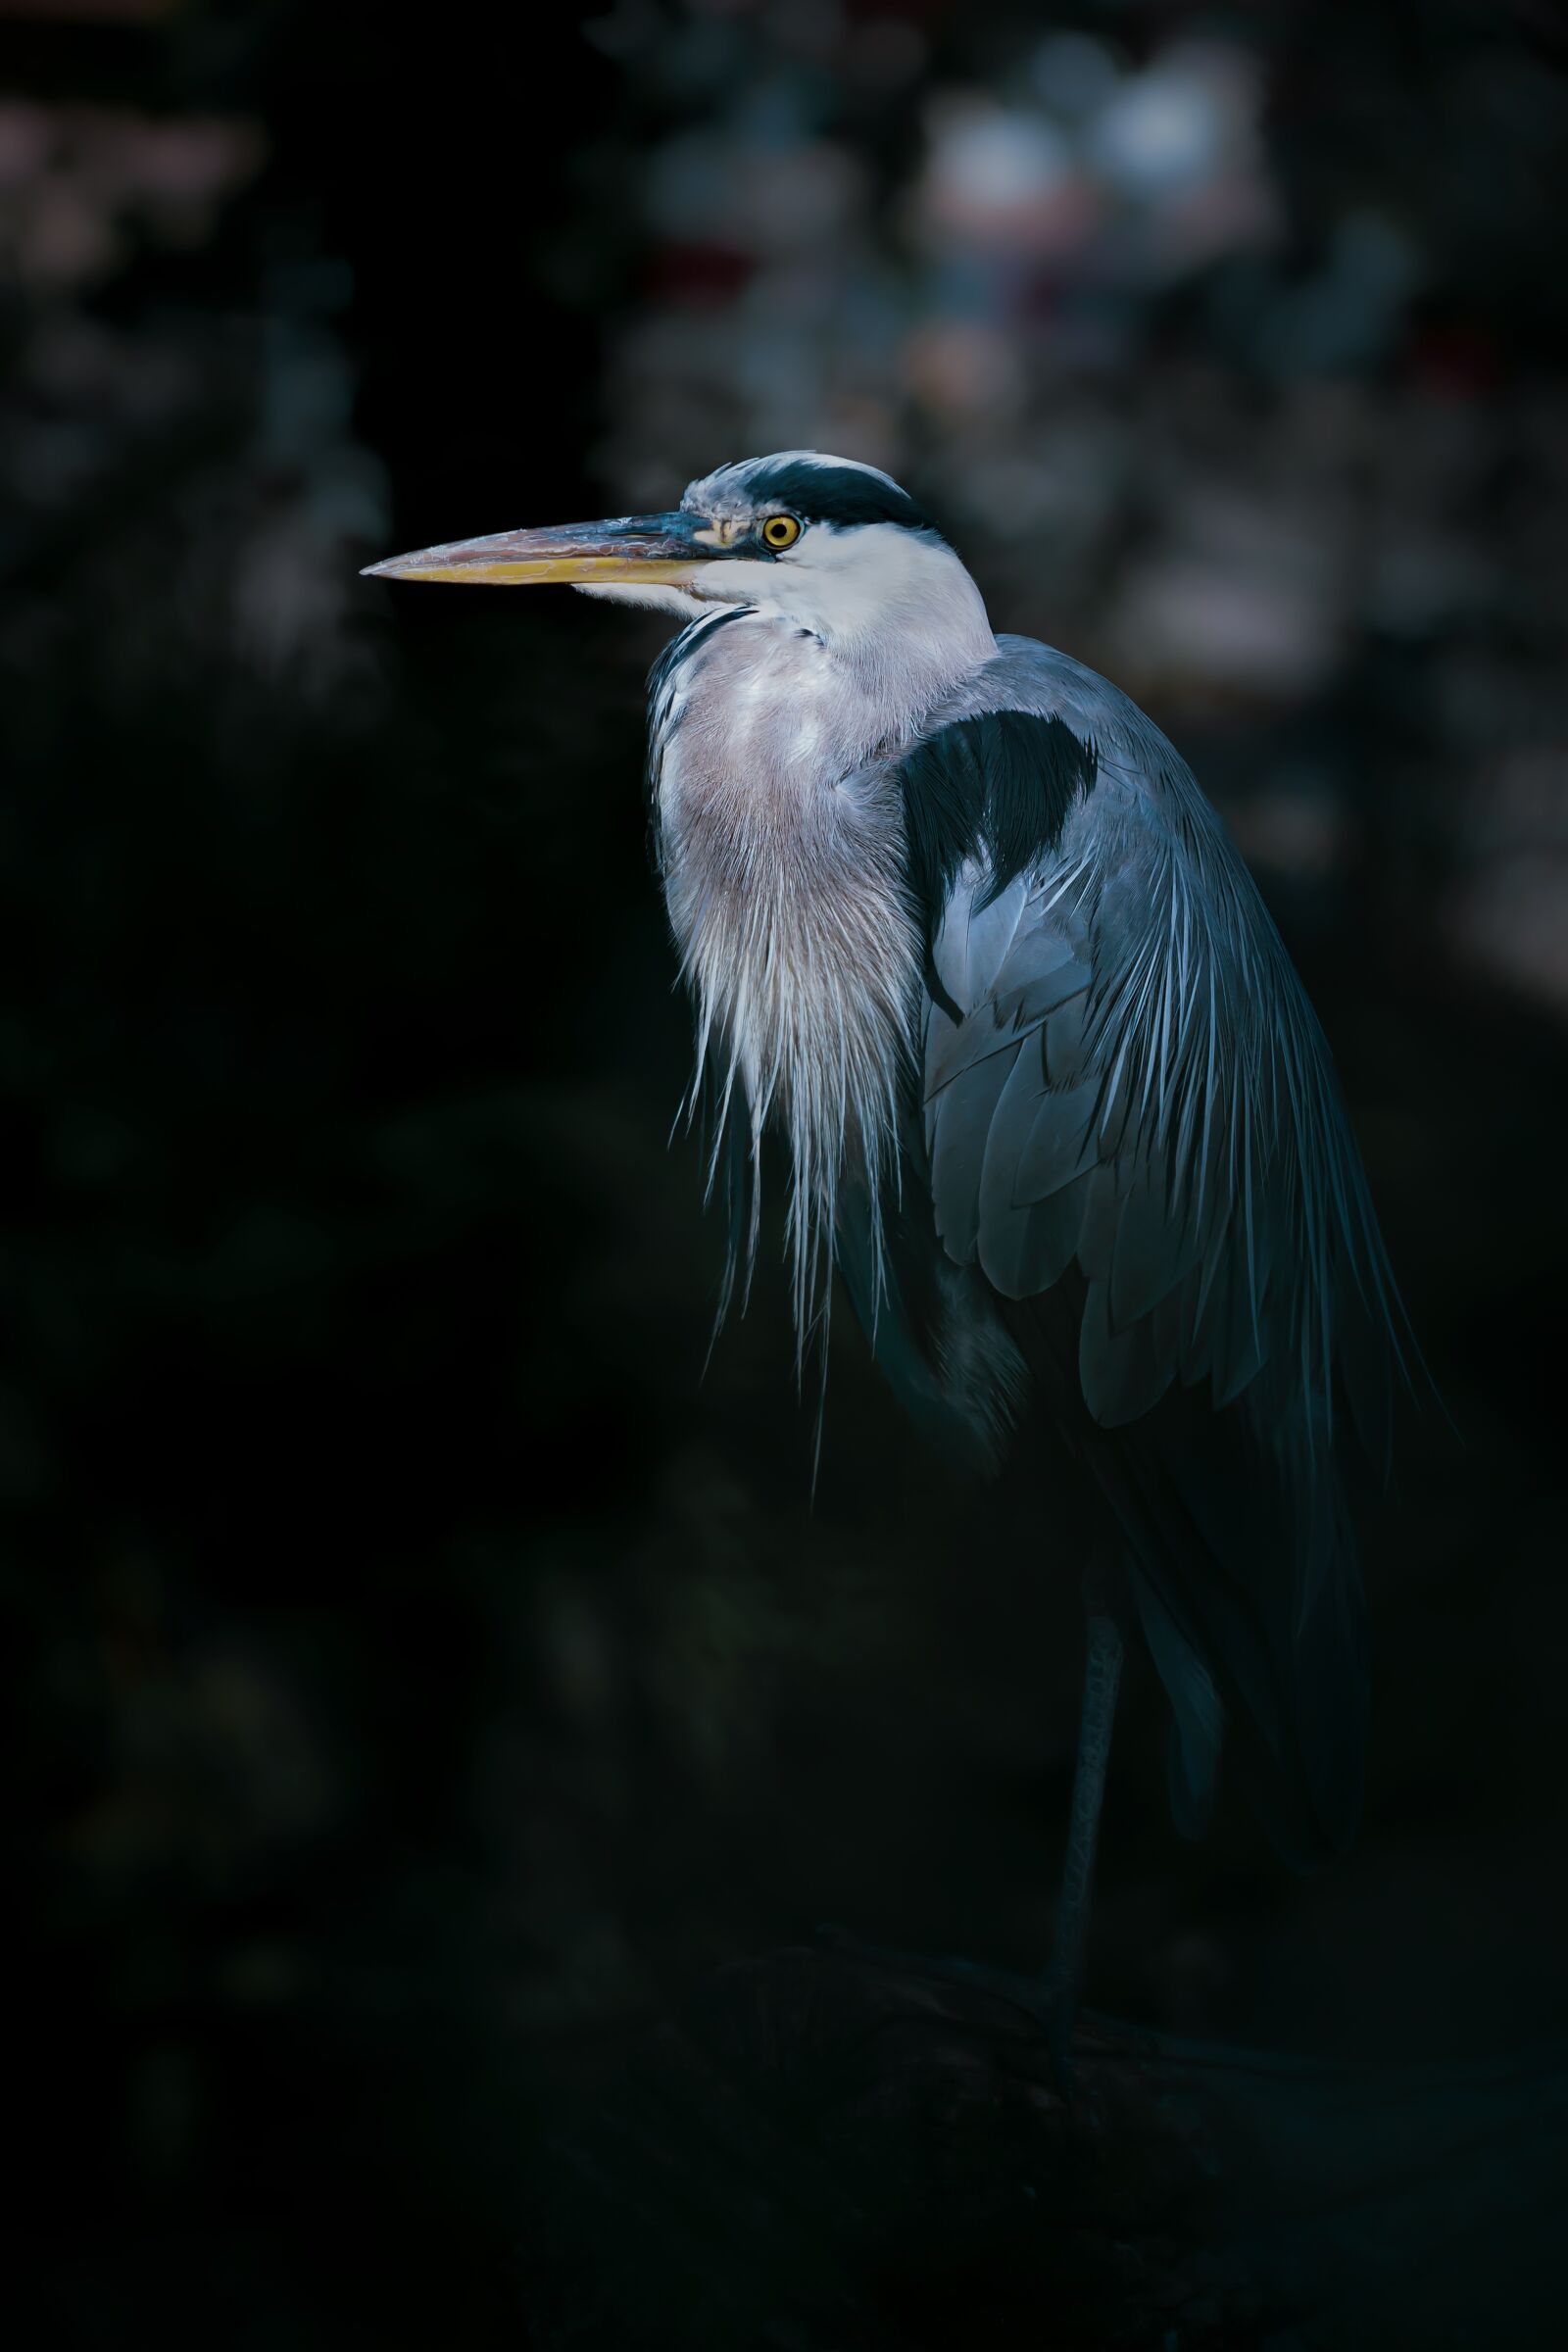 Canon EOS 7D sample photo. Heron, bird, animal photography